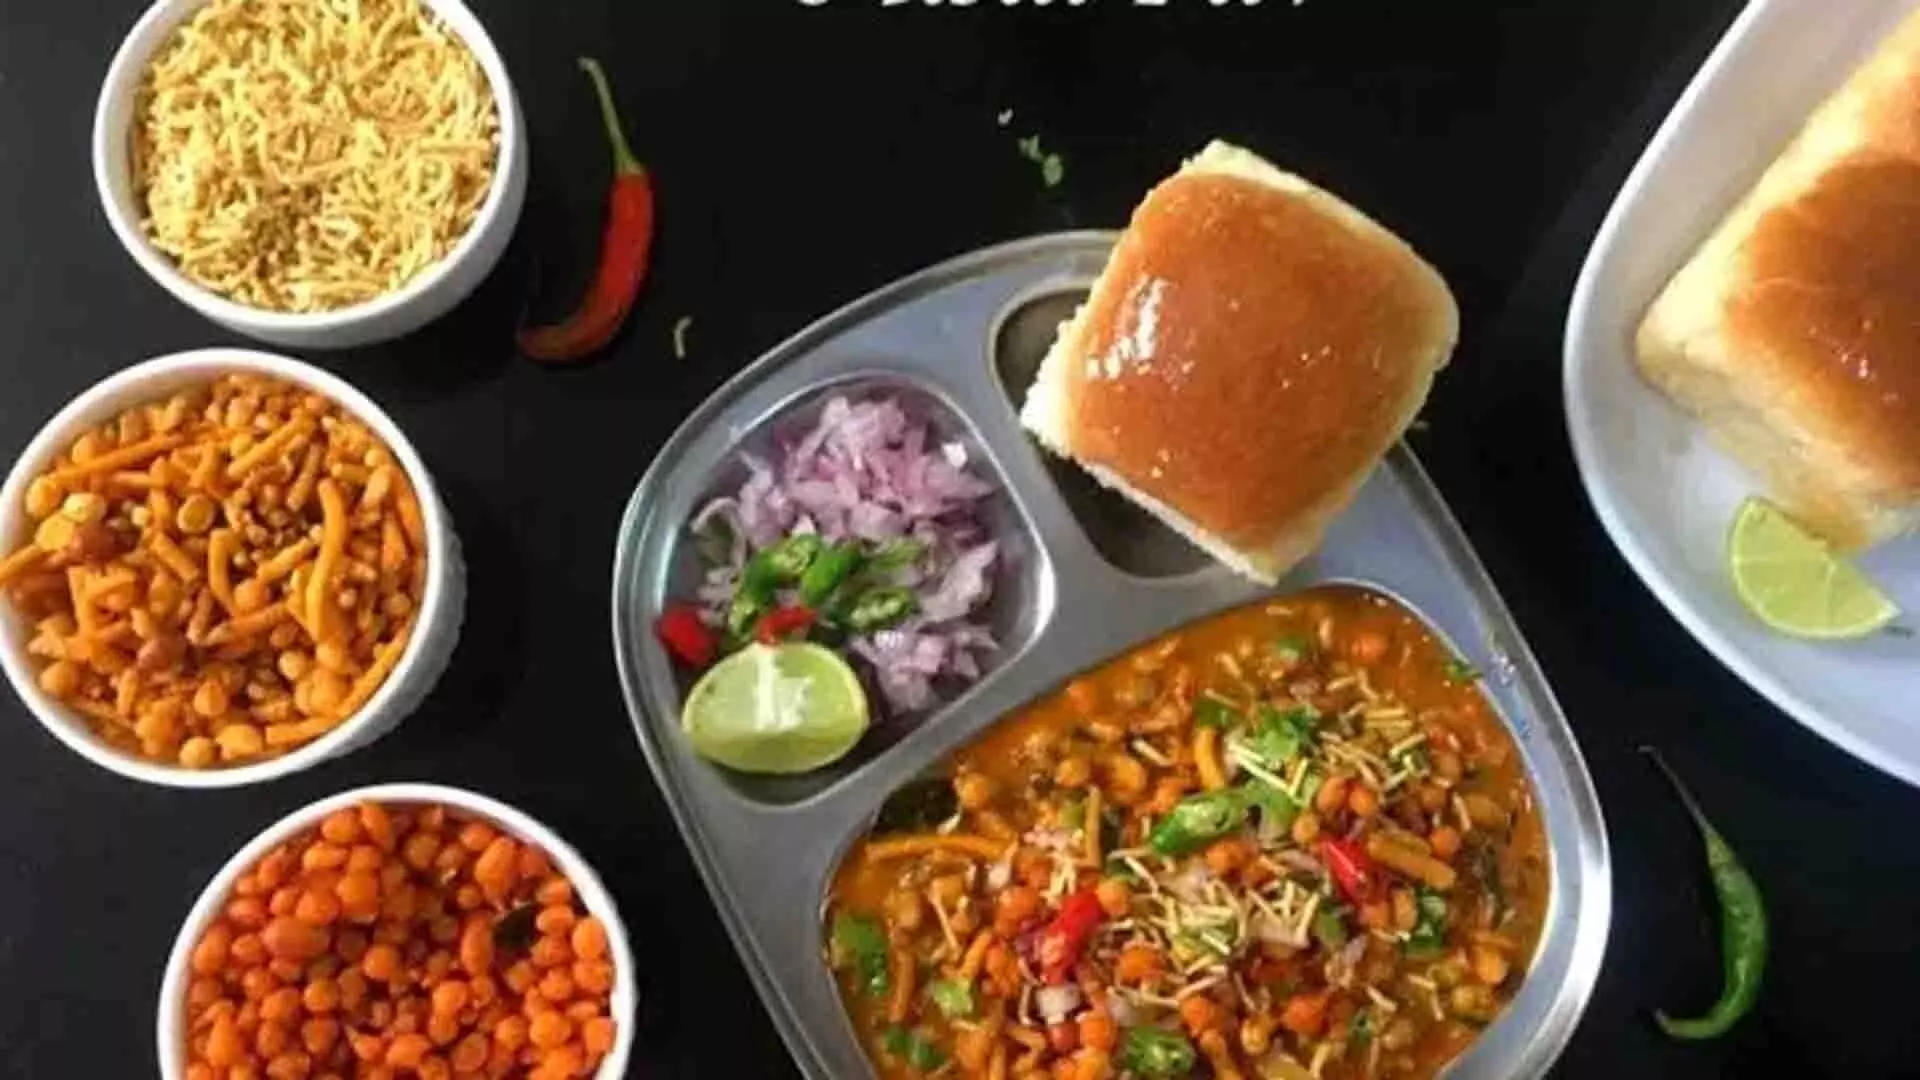 महाराष्ट्र का स्वादिष्ट व्यंजन है मिसल पाव, जानें किस तरह बनाए इसे लाजवाब